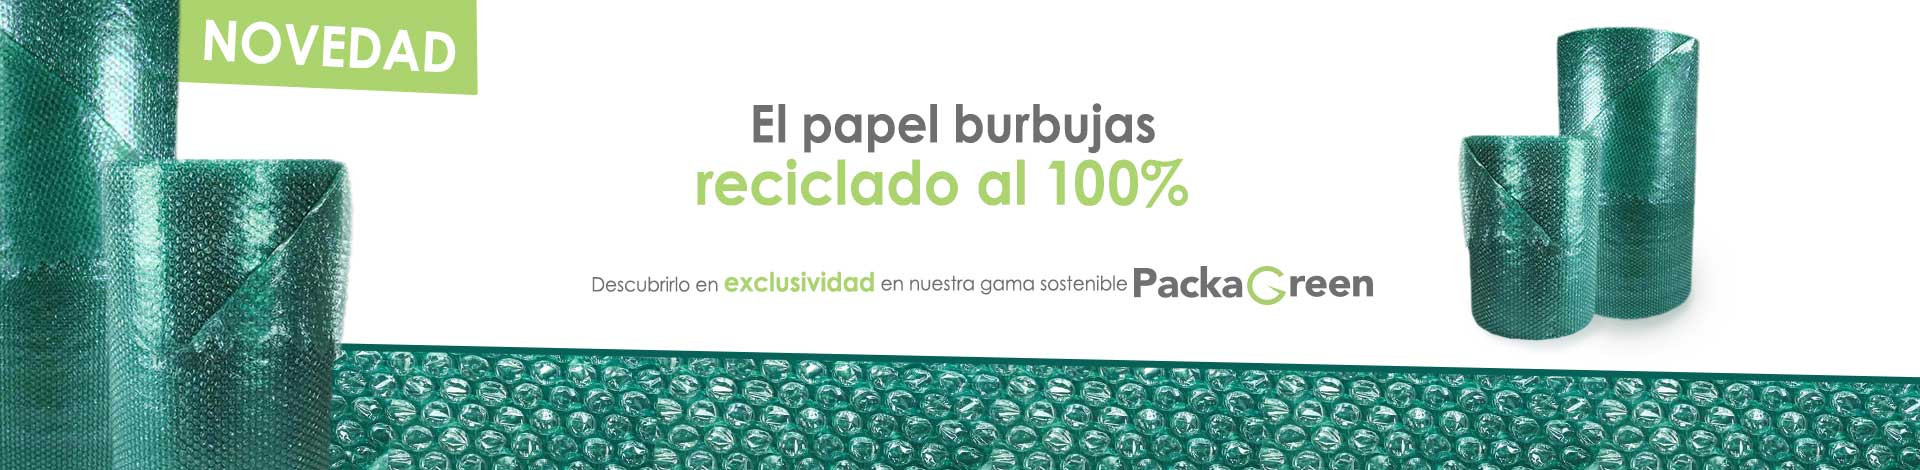 El papel burbujas reciclado al 100%